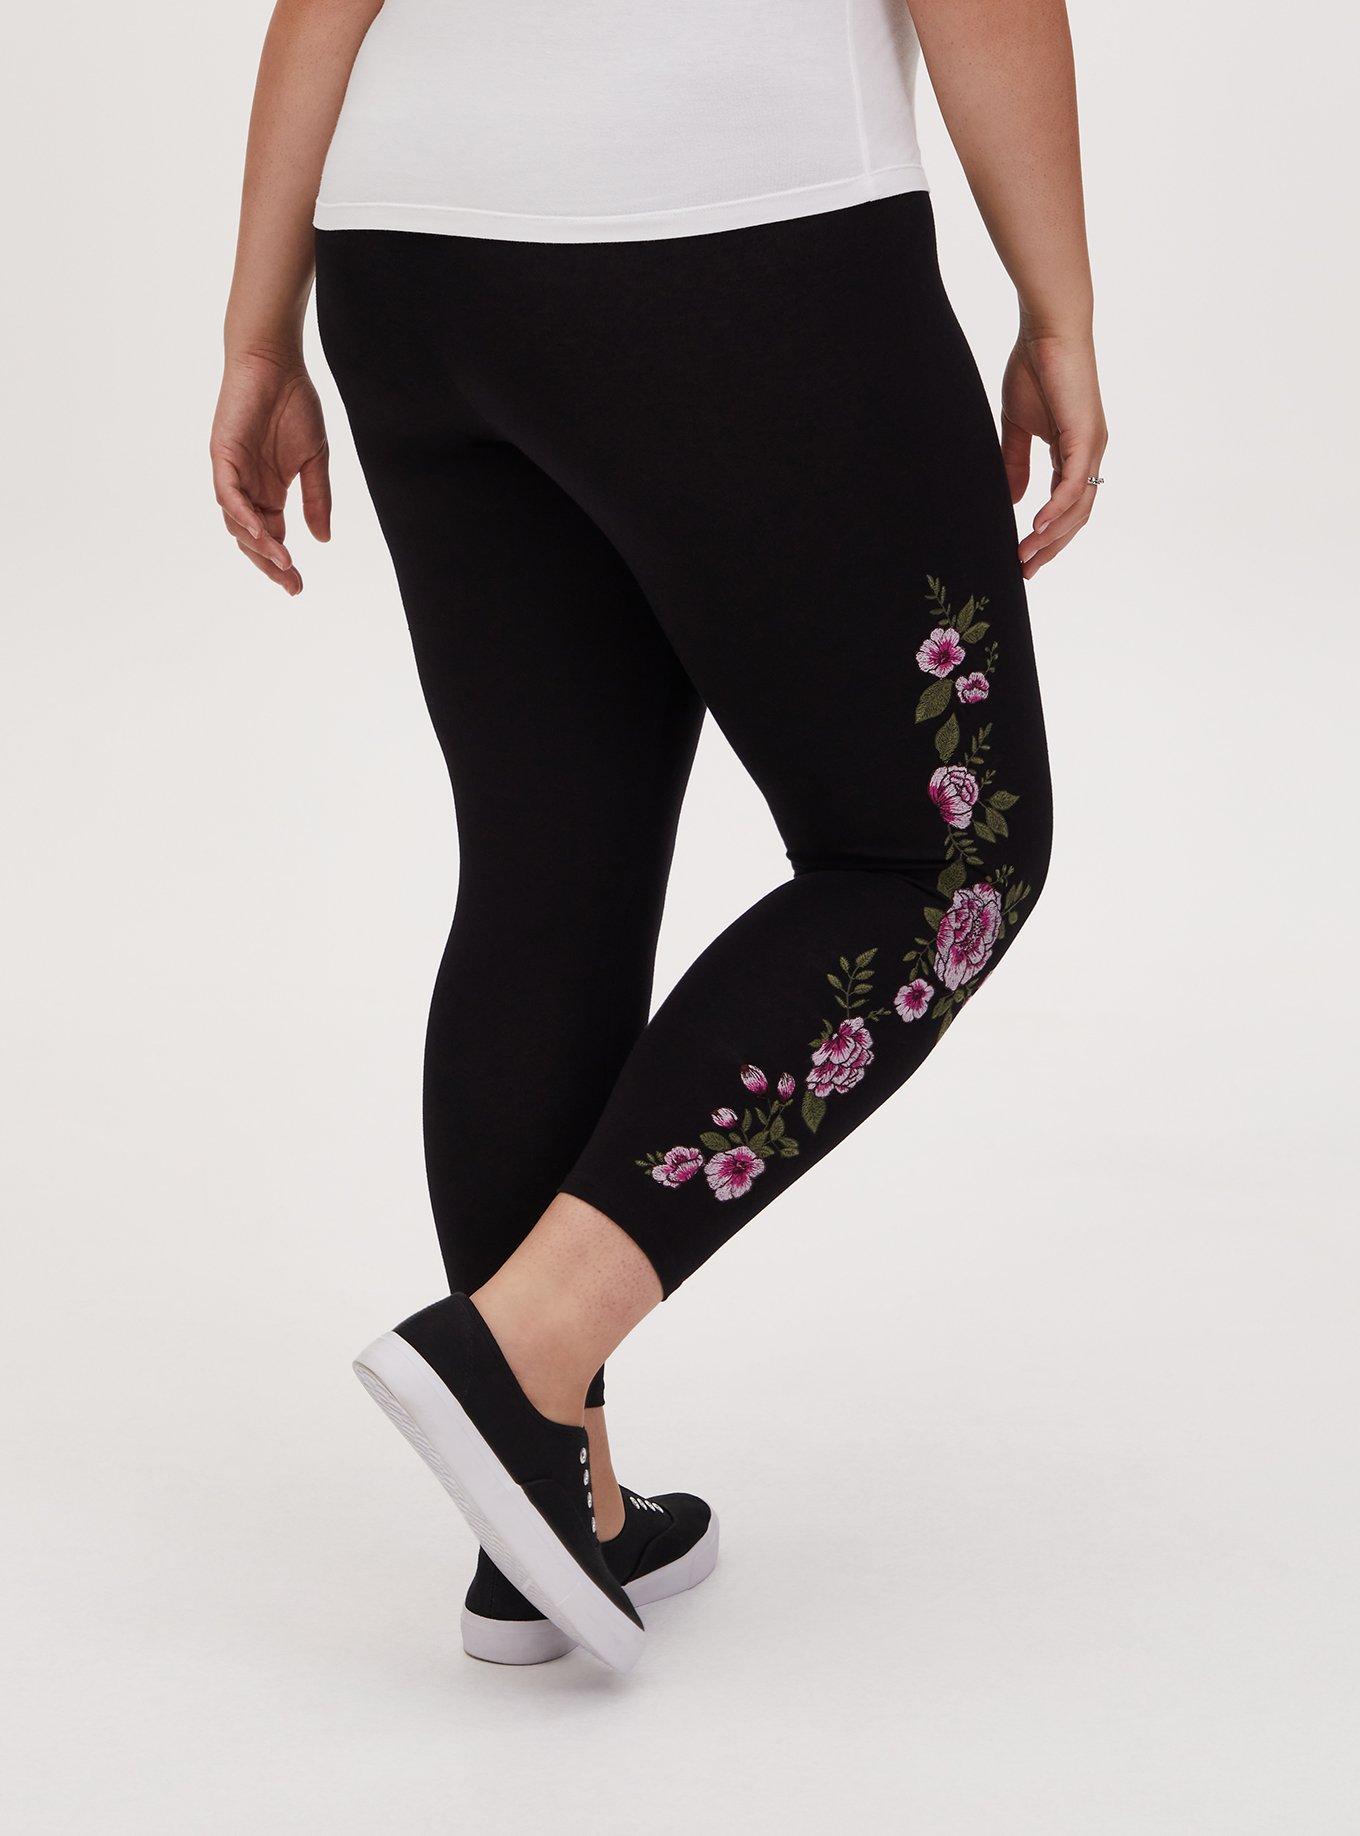 Plus Size - Crop Premium Legging - Embroidered Floral Black - Torrid